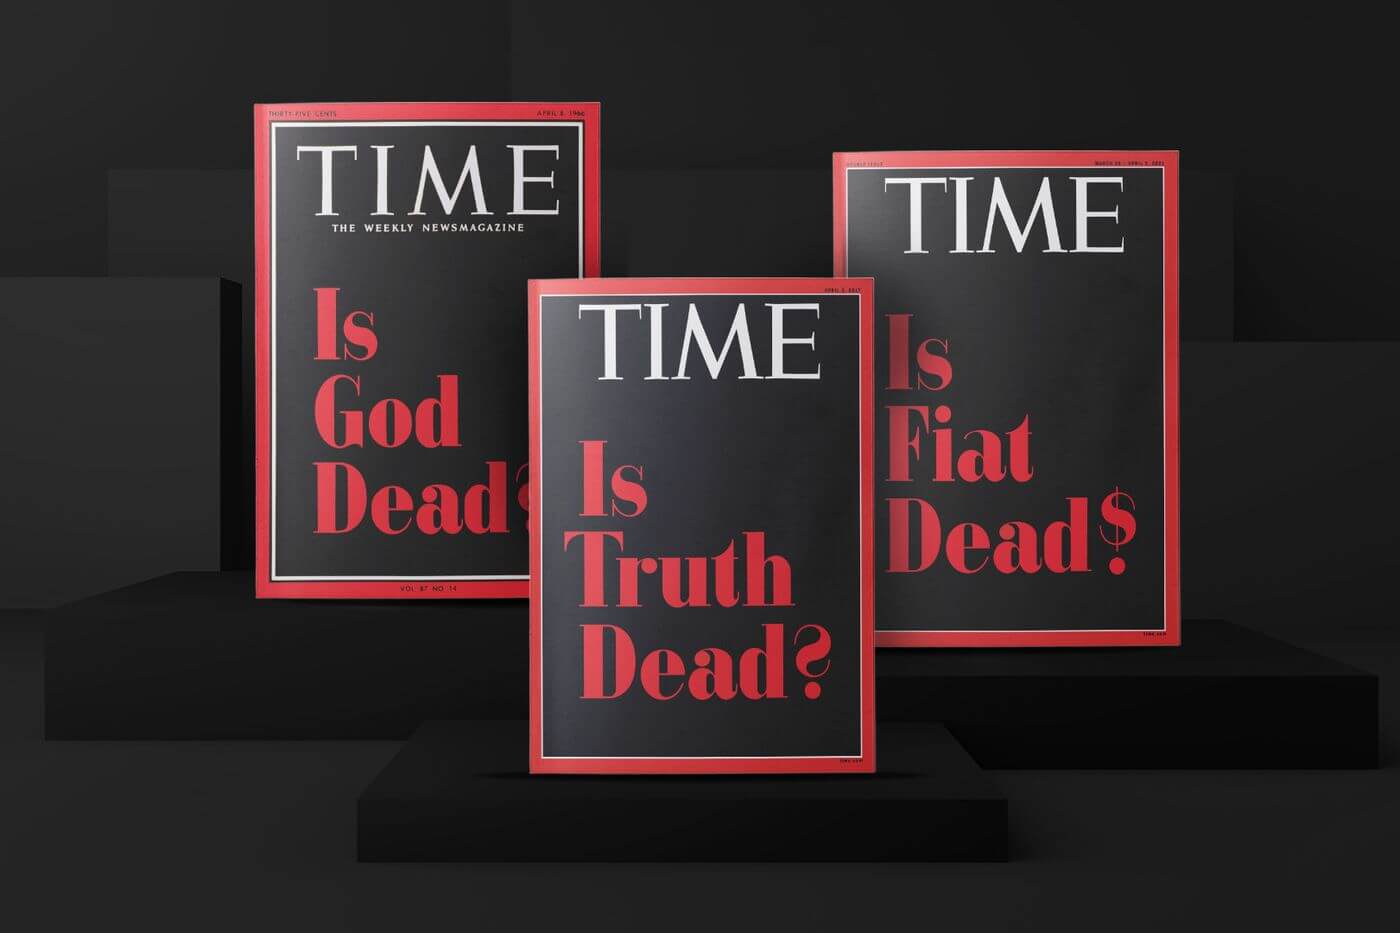 Журнал TIME раздаёт NFT за мемы. Кому подарят уникальные токены? Обложки TIME, доступные в виде NFT-токенов. Фото.